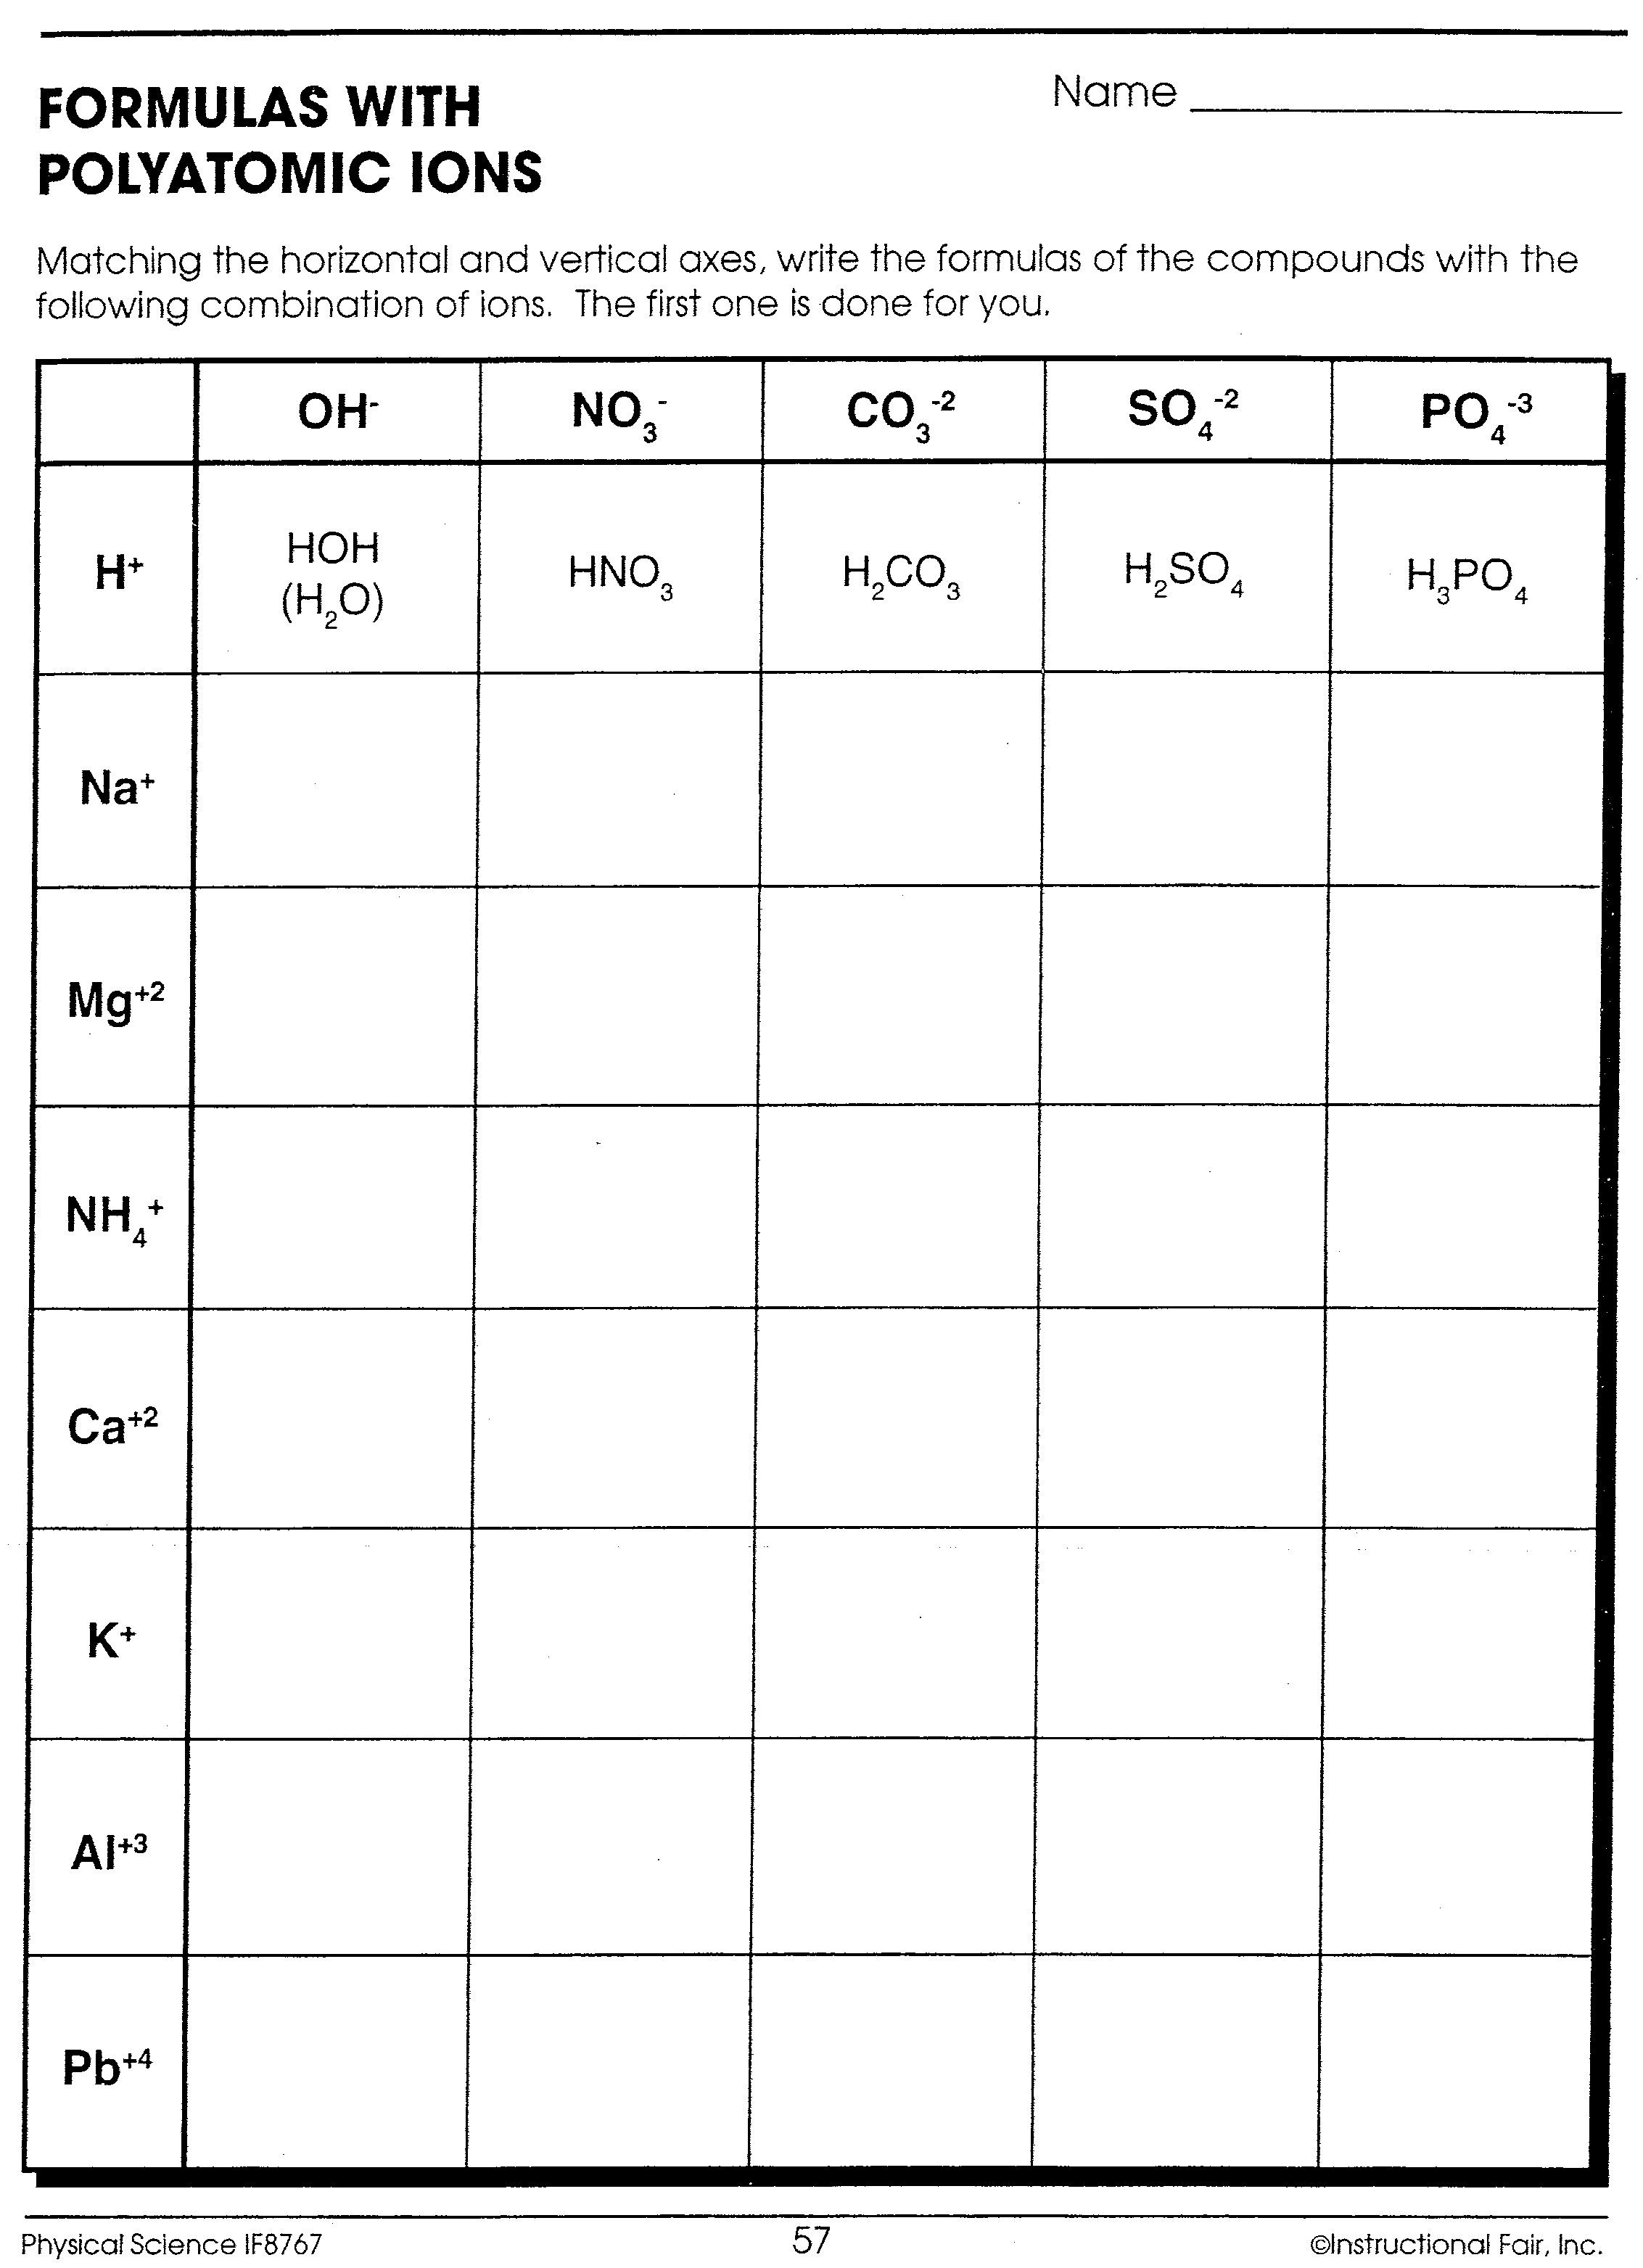 chemical-nomenclature-worksheet